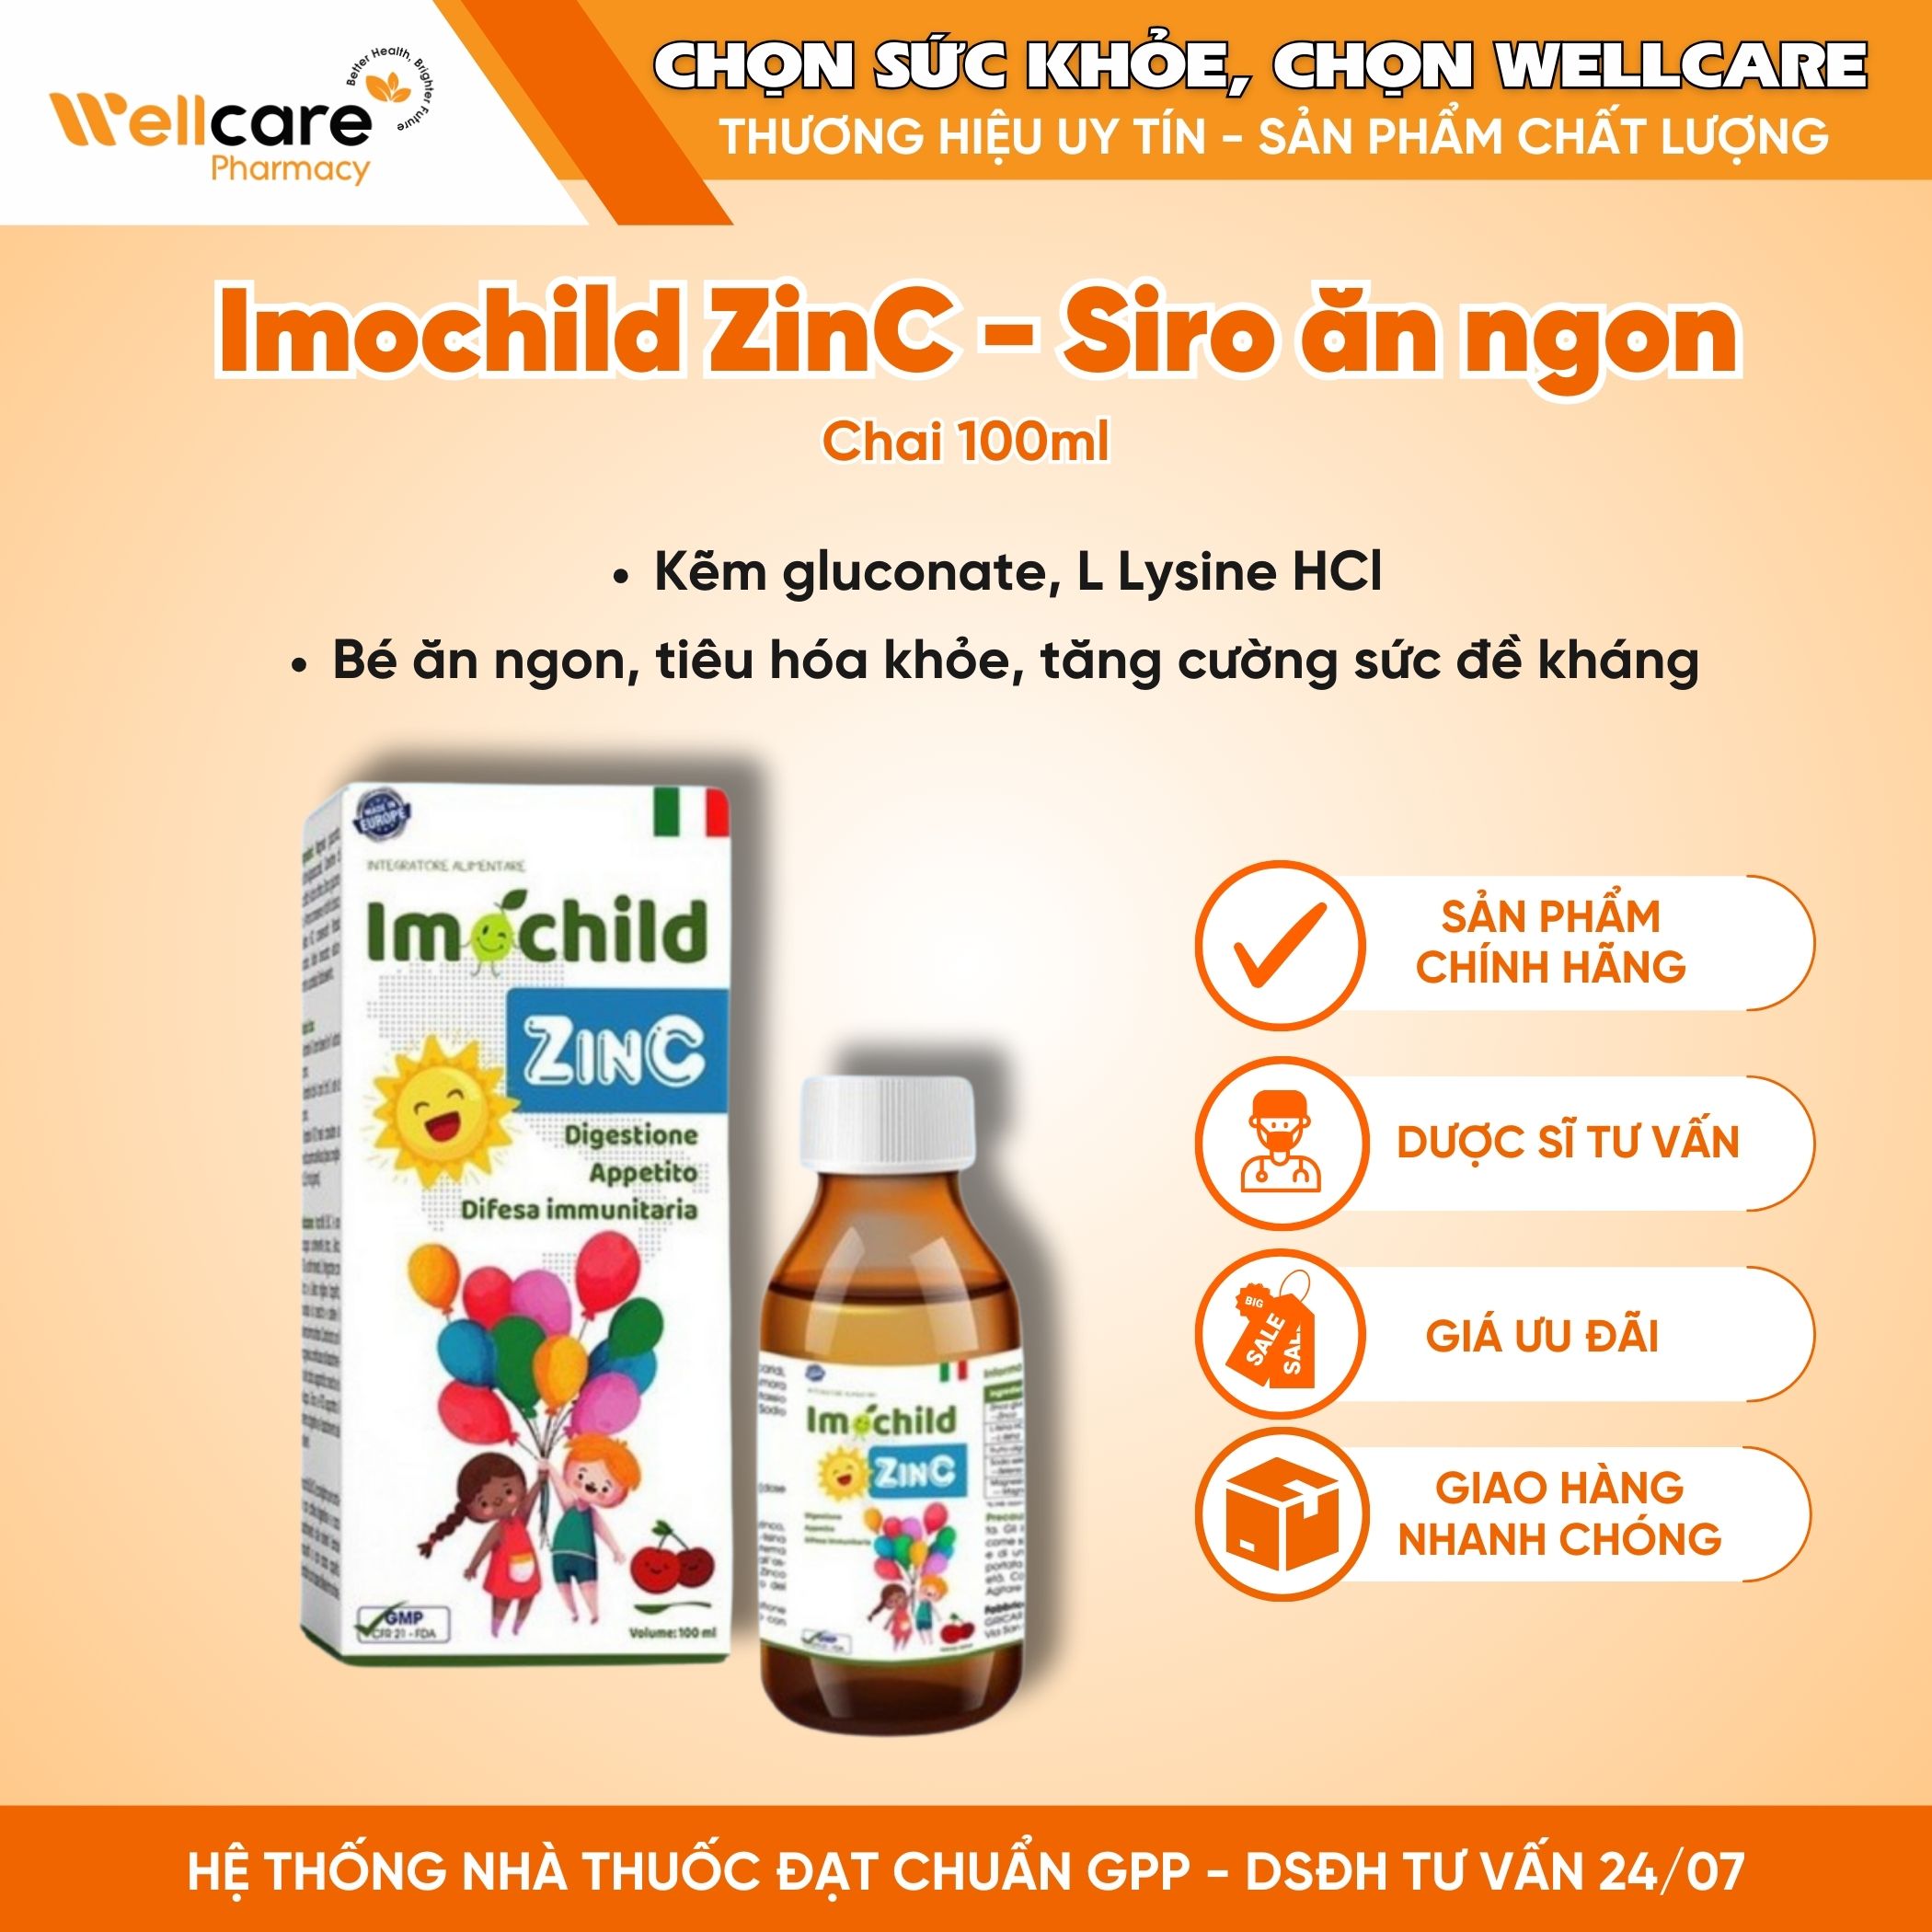 Imochild ZinC – Tăng đề kháng tốt, hỗ trợ tiêu hóa khỏe (Chai 100ml)